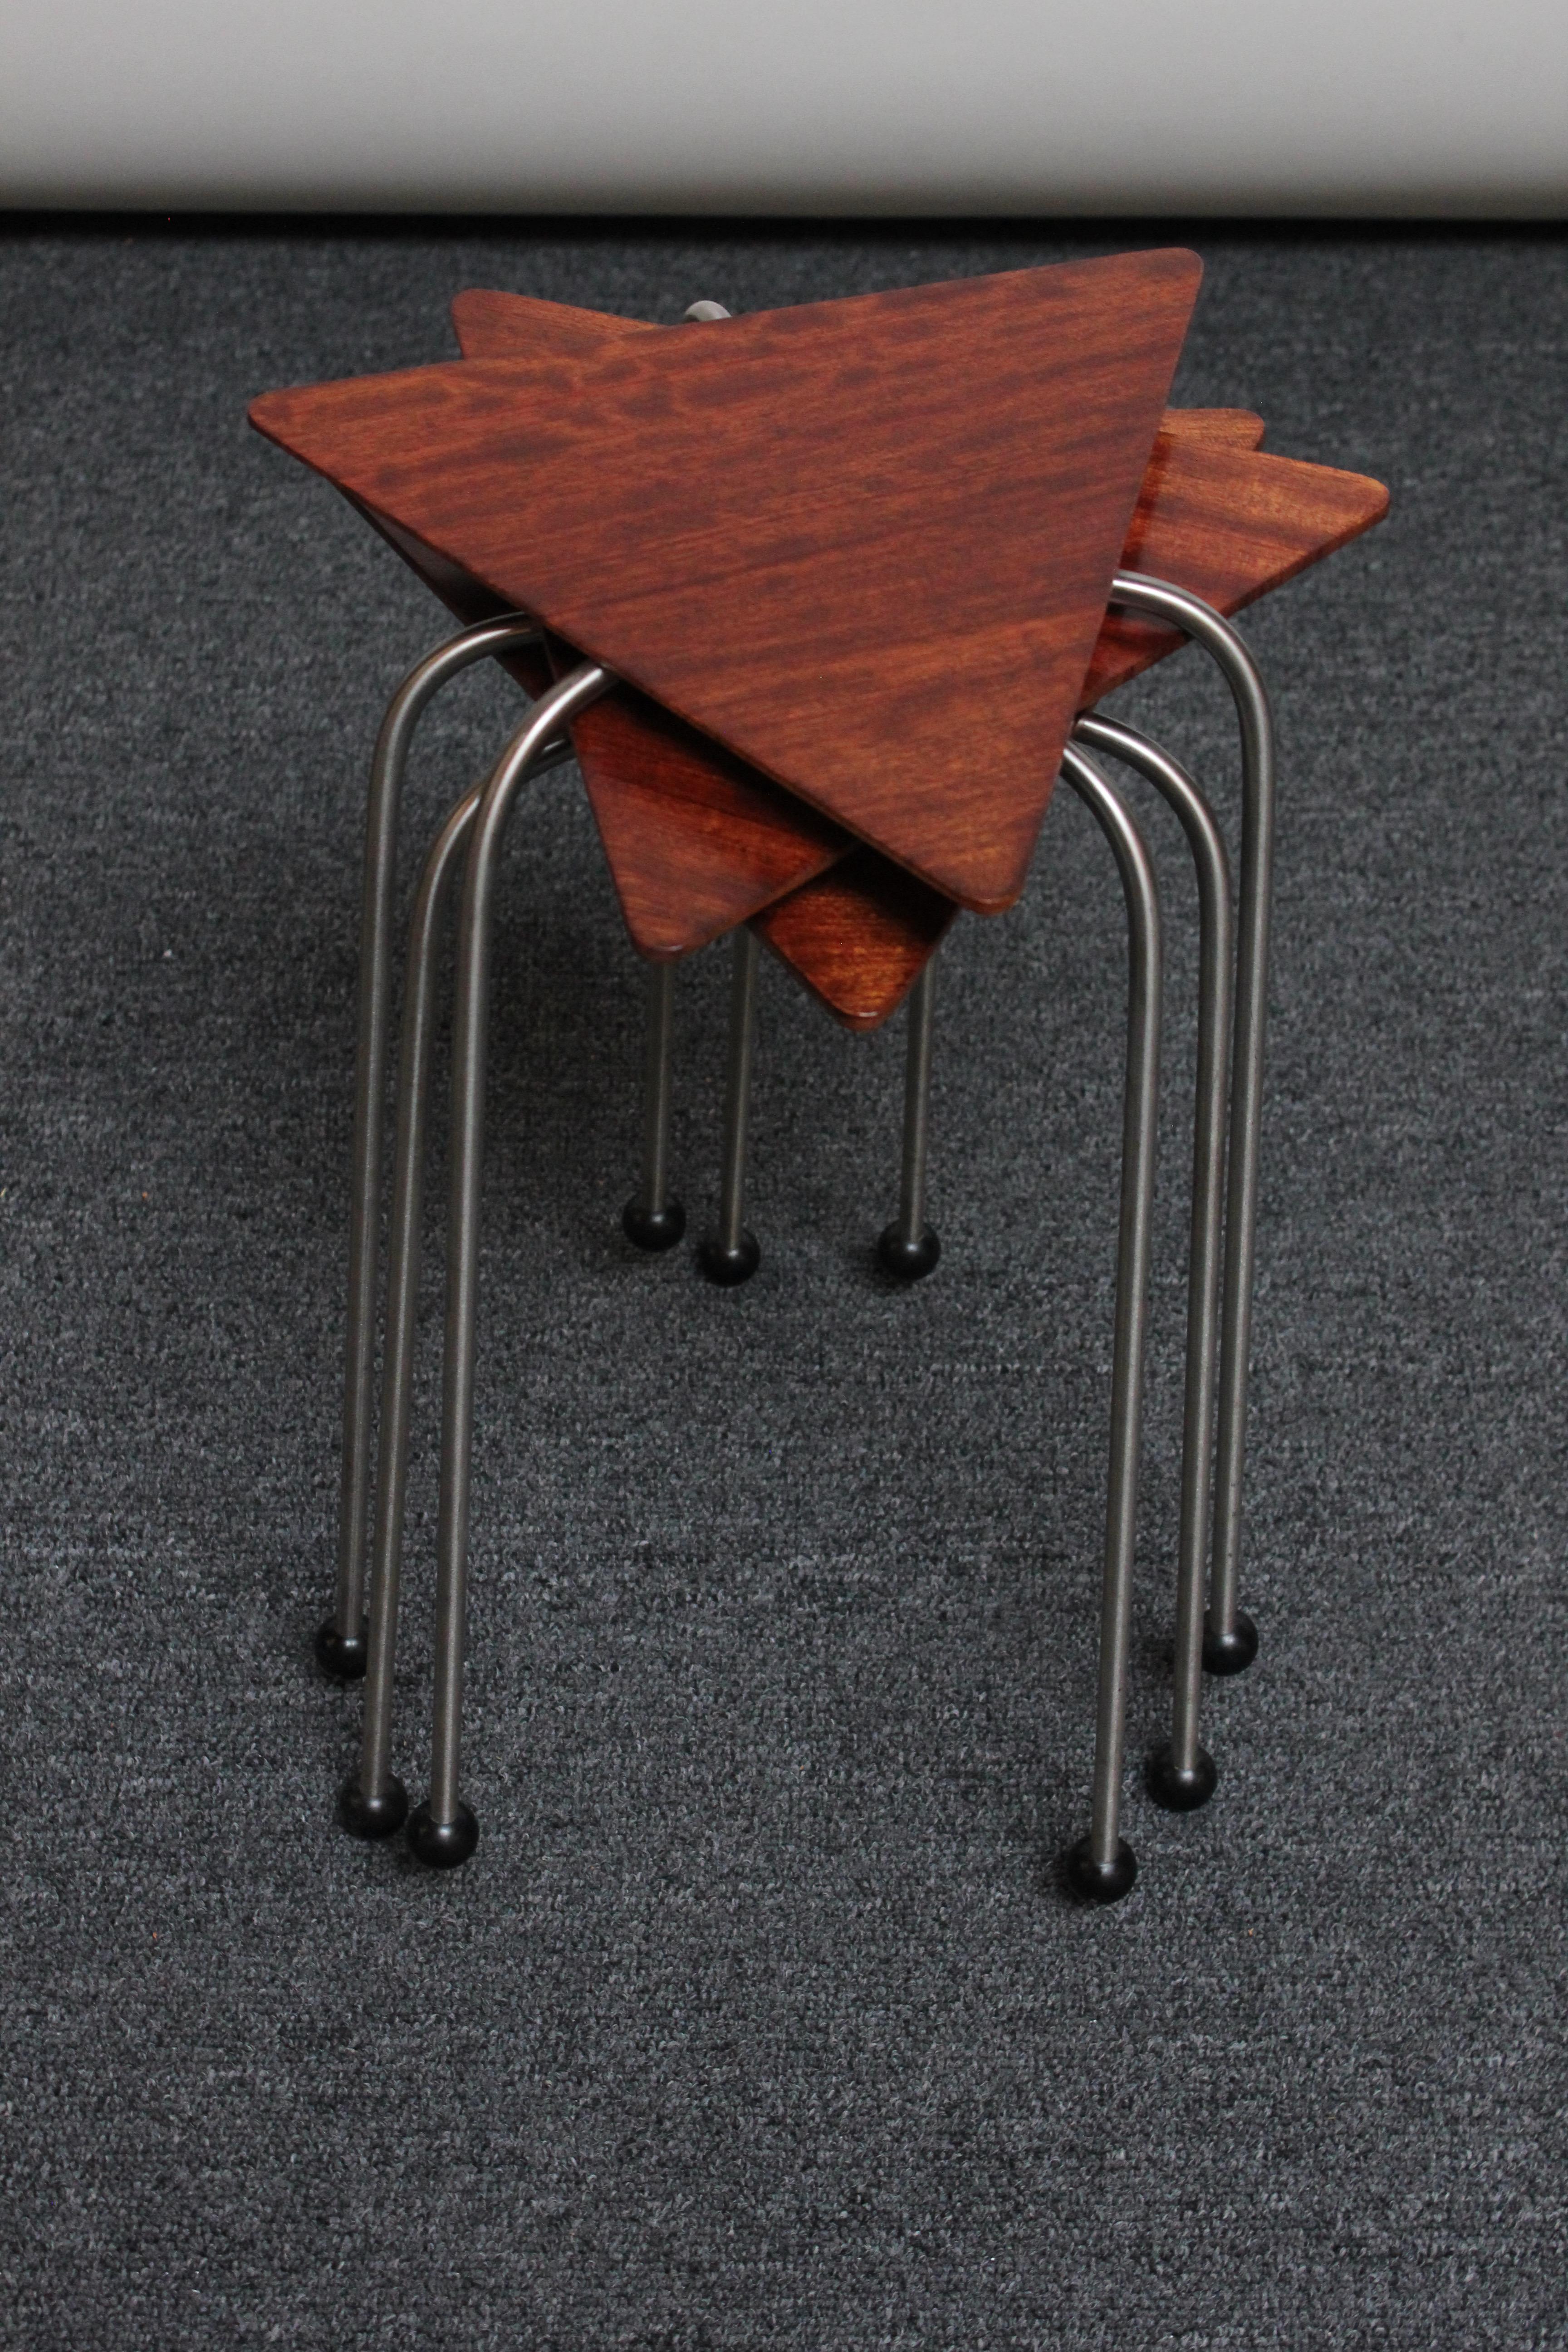 Skulpturale Stapeltische des zeitgenössischen Designers David Kiernan (ca. 1990er Jahre, USA). Die dreieckigen Platten aus massivem Bubinga werden von dreibeinigen Stahlstangensockeln mit schwarzen Kugelfüßen getragen. 
Maße: Dreiecksoberteile sind